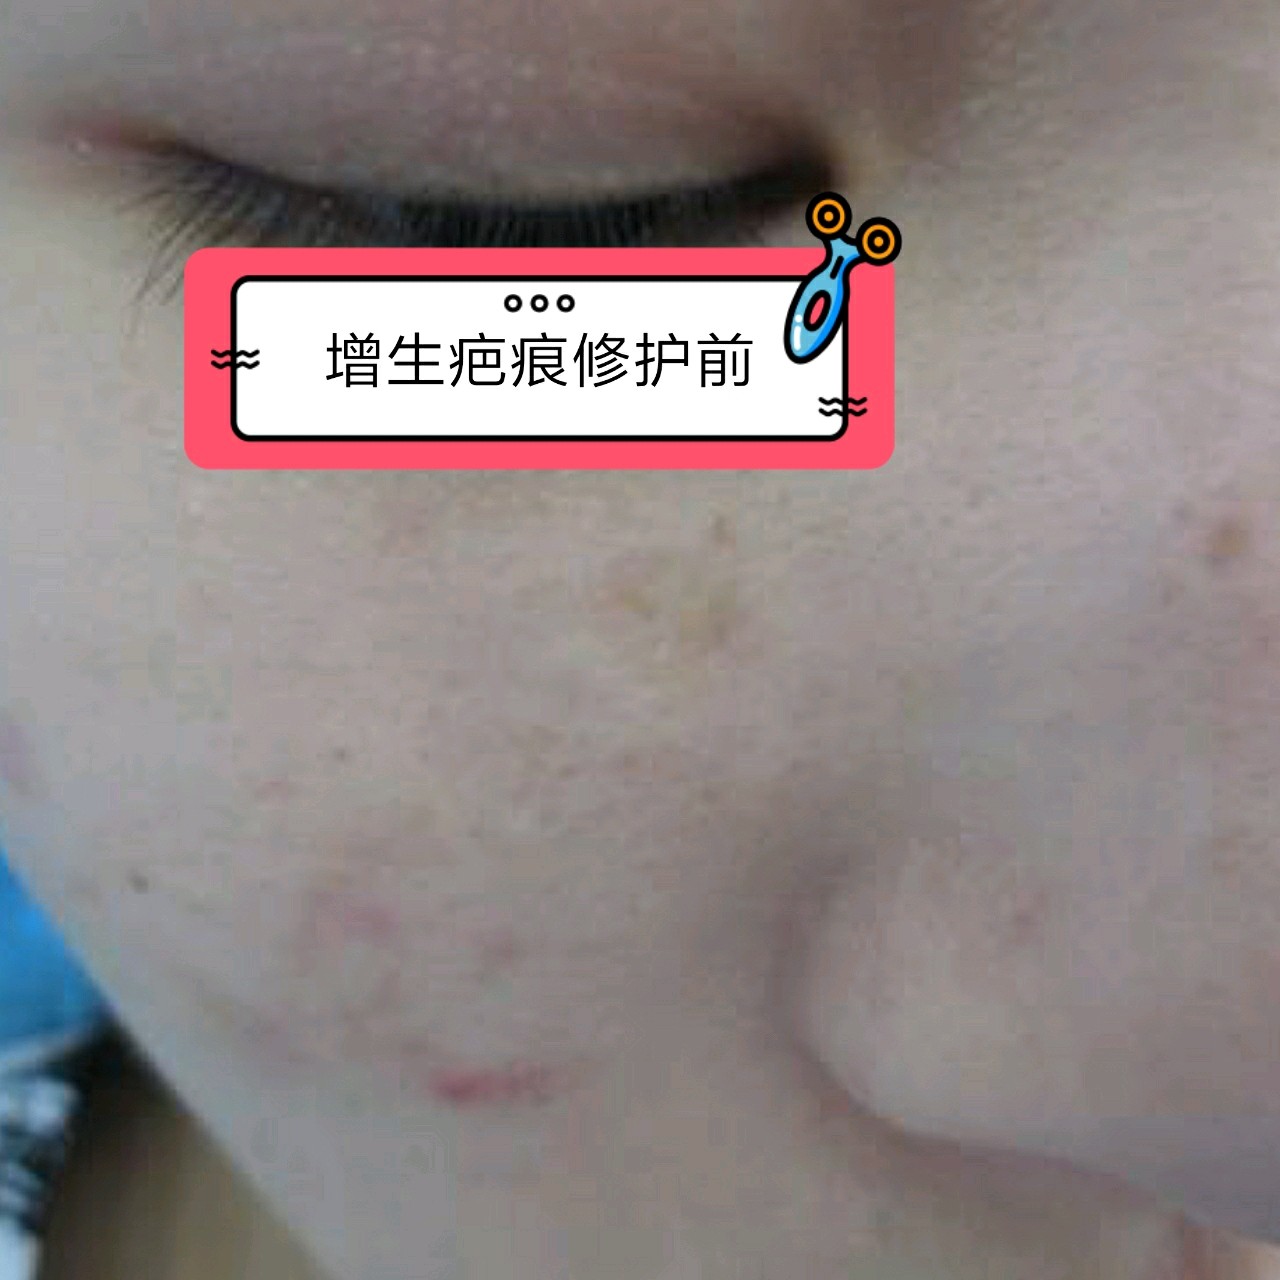 脸上的增生疤痕是因为激光点痣,在点痣之后就出现了增